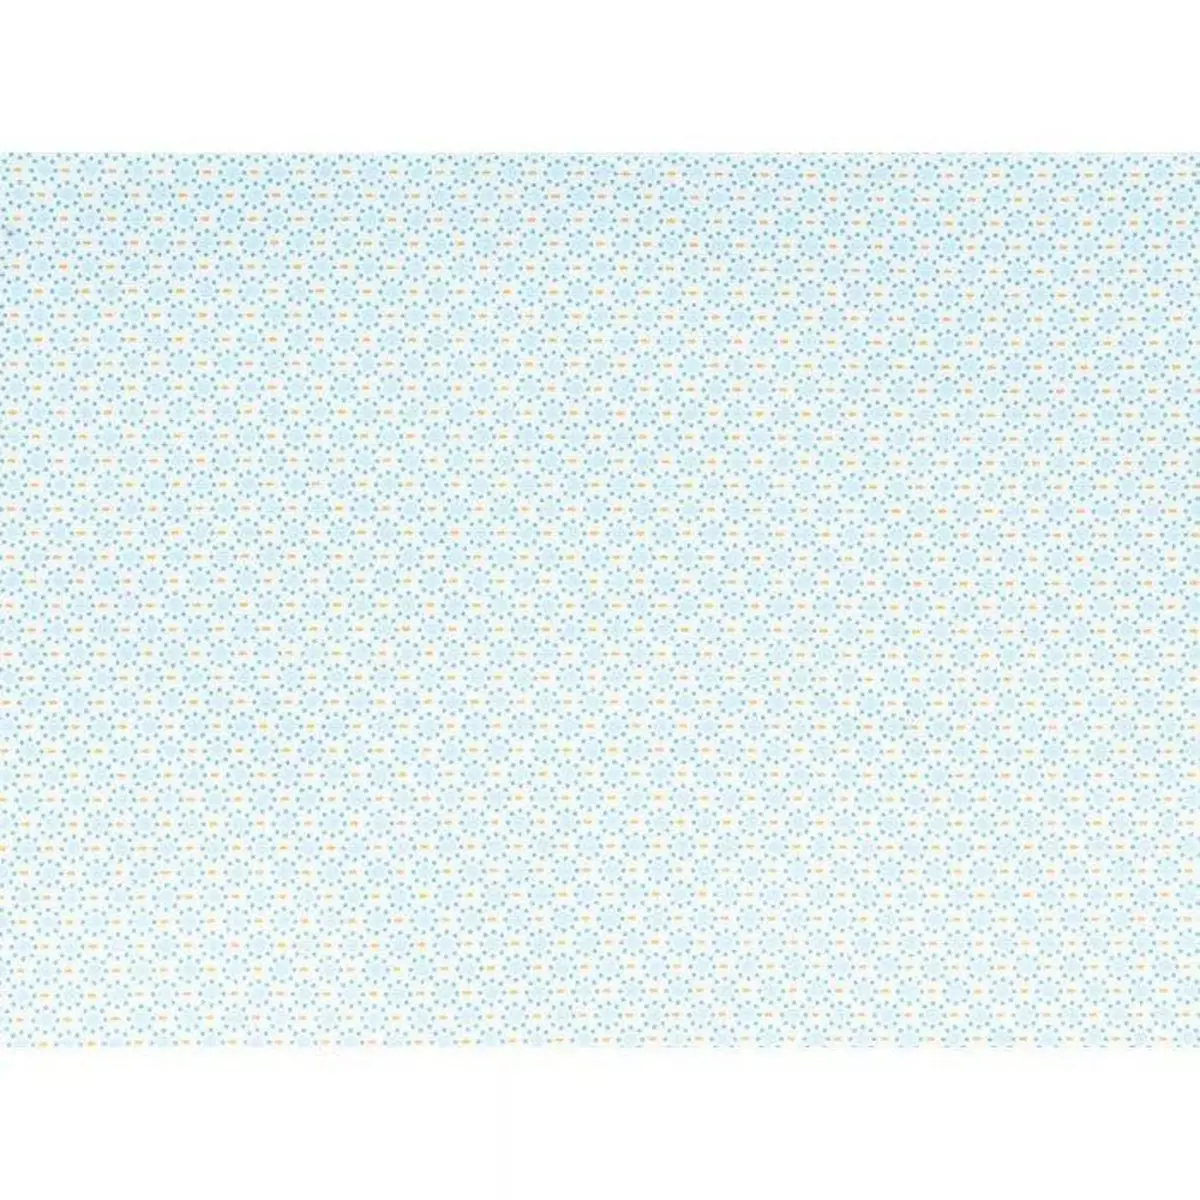  Coupon de tissu 55 x 45 cm - Ronds bleu clair à pointillés bleus